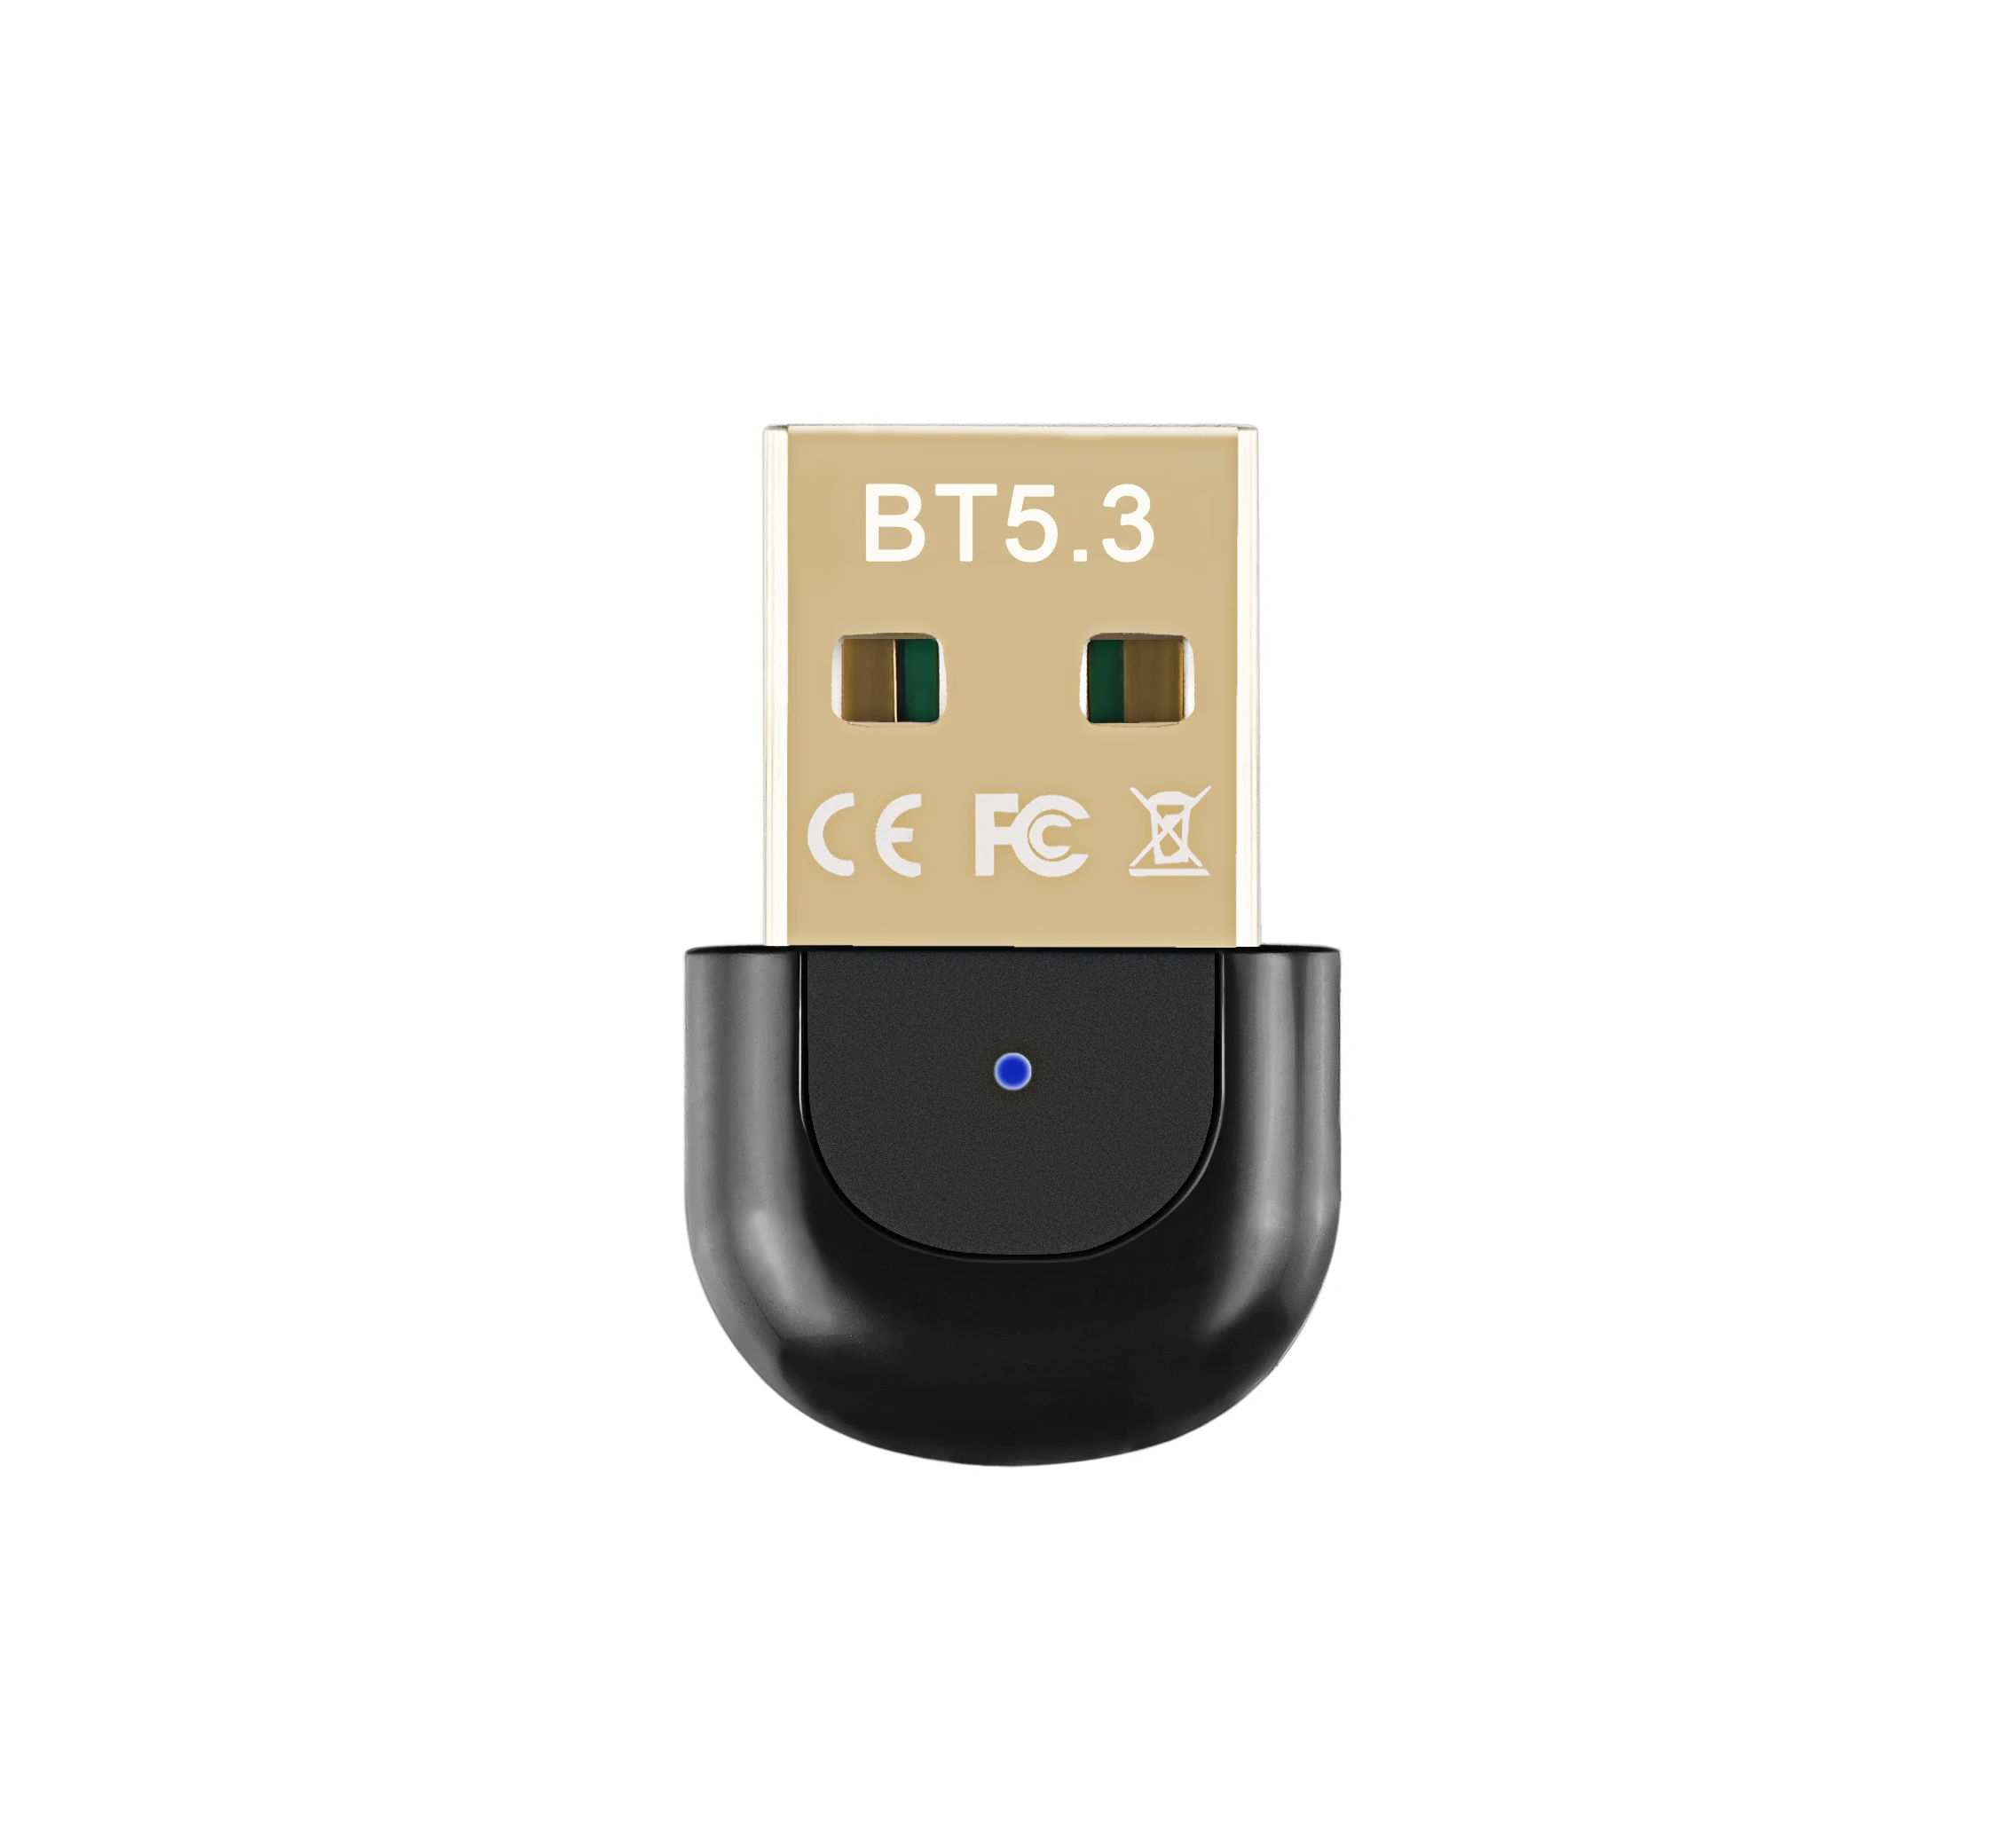 Adaptateur Bluetooth 5.0 2 en 1, dongle USB, émetteur audio sans